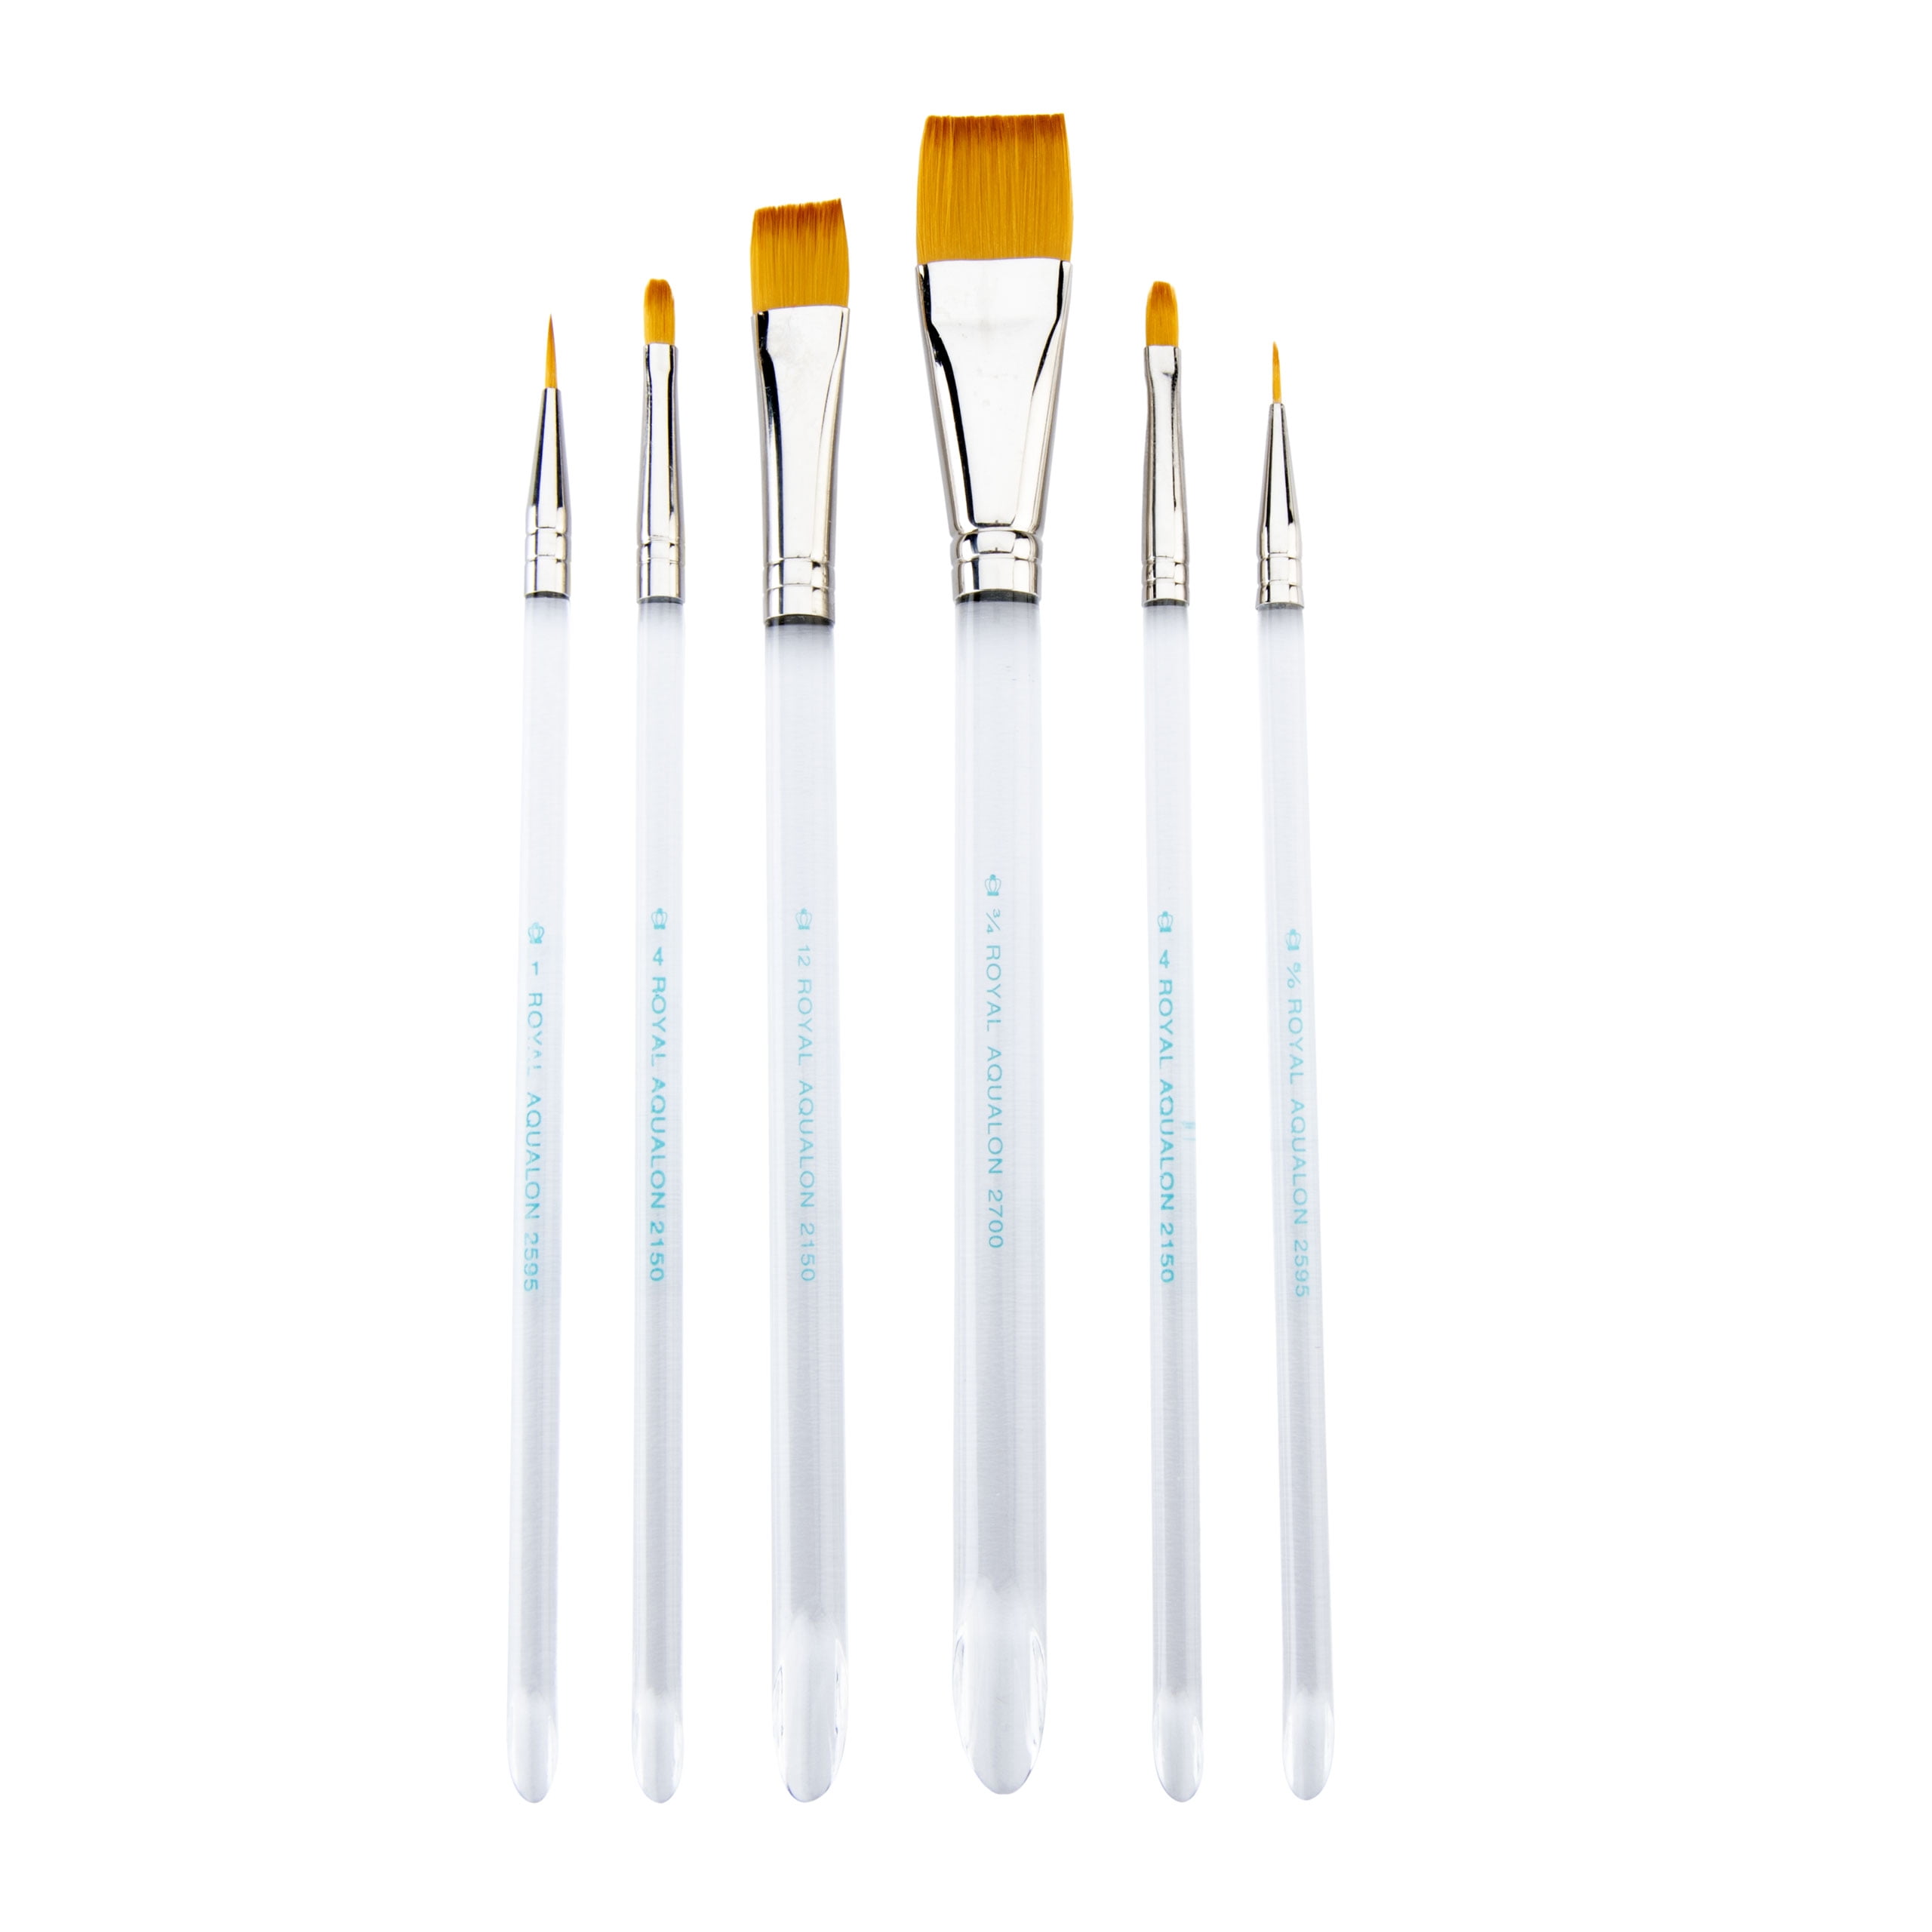 Royal & Langnickel Aqualon - RAQUA-DEC - 6pc Short Handle Paint Brush Set -  Walmart.com